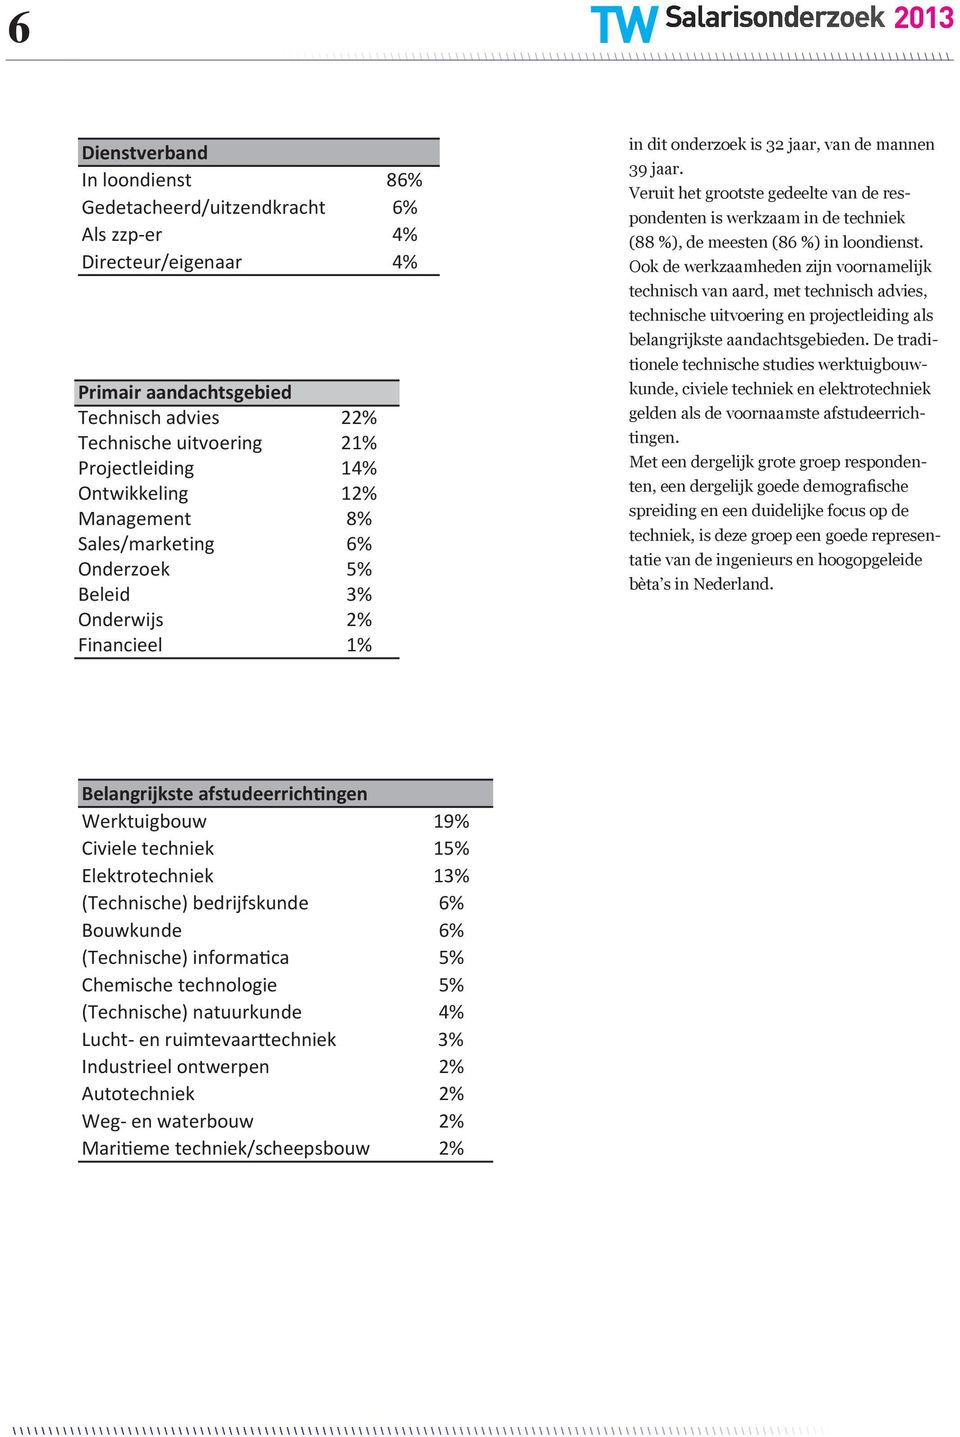 Veruit het grootste gedeelte van de respondenten is werkzaam in de techniek (88 %), de meesten (86 %) in loondienst.